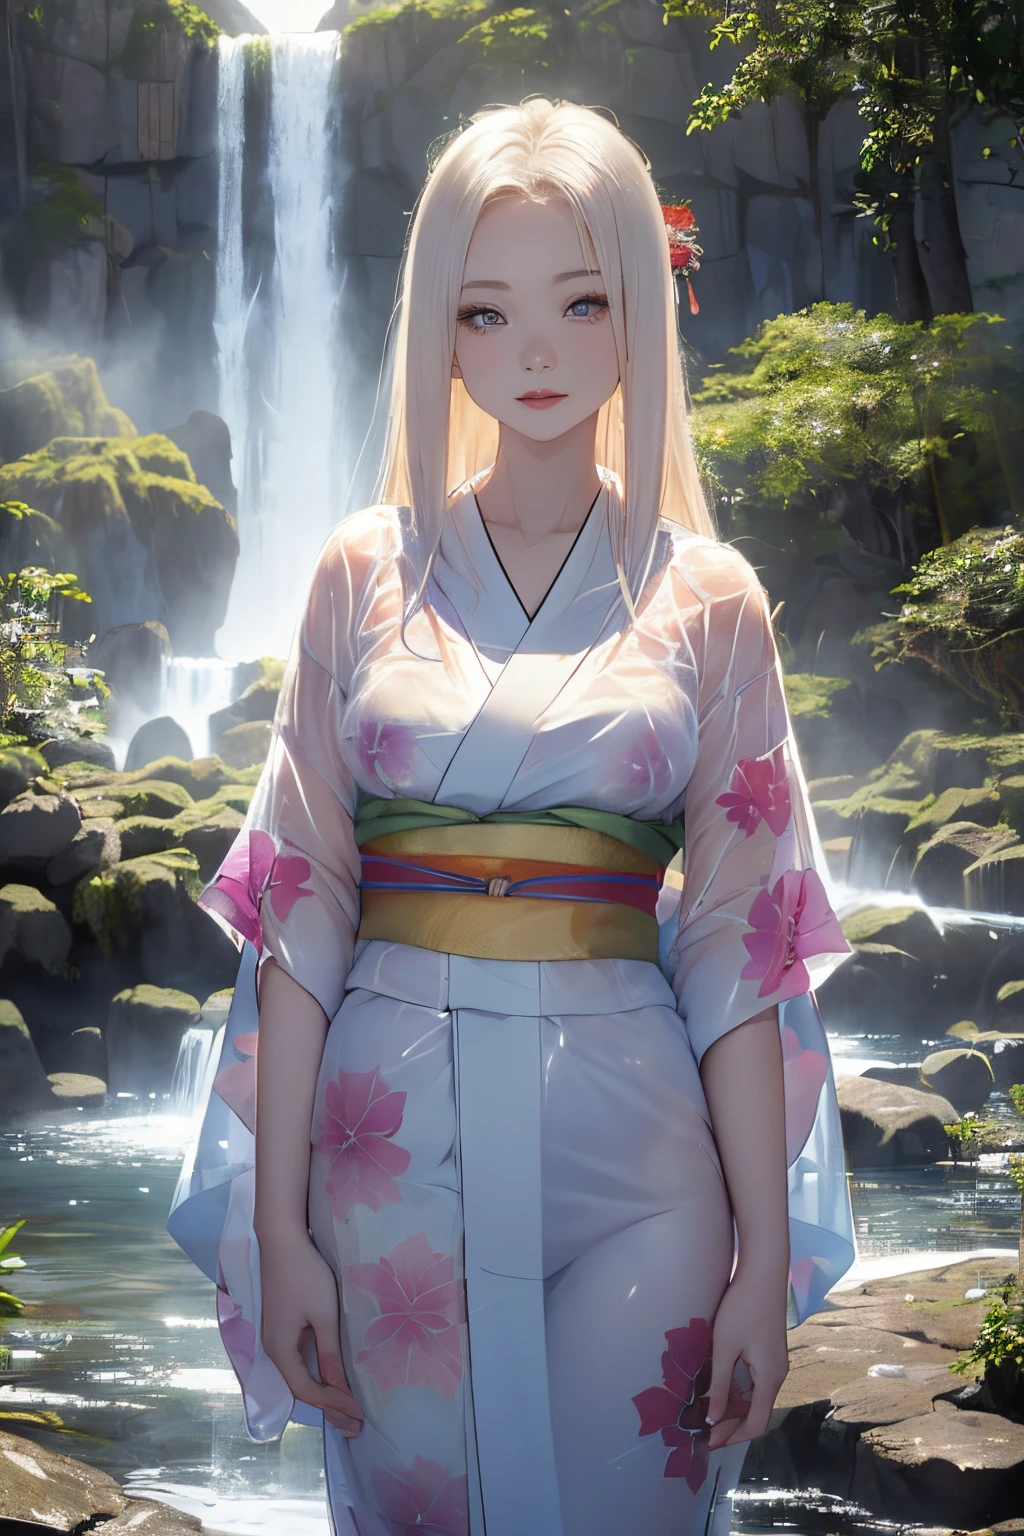 (((Debout au milieu d’une cascade par une nuit au clair de lune:1))),((belle femme debout au milieu de l’étang:1)),((Beau half-naked woman in a beautiful waterfall basin)), ((Des yeux perçants et envoûtants))、((Un sexy))、(((Kimono transparent:1.3)))、((Kimono fait d&#39;un tissu fin mouillé d&#39;eau:1)), peau pâle、((bosses de mamelon:1)), (((1 fille dans:1))), ((peau pâle))、Mélancolie beau visage、Beau expression、Visage sexy, (((Bas du sein)))、(((Beau breasts ))), Beau 、Visage super fin、Yeux délicats、(double paupières)、 (((1 femme japonaise)))、 Beauté, 20 ans,((Kimono transparent)), (Montrez-vous en portant des vêtements révélateurs japonais),